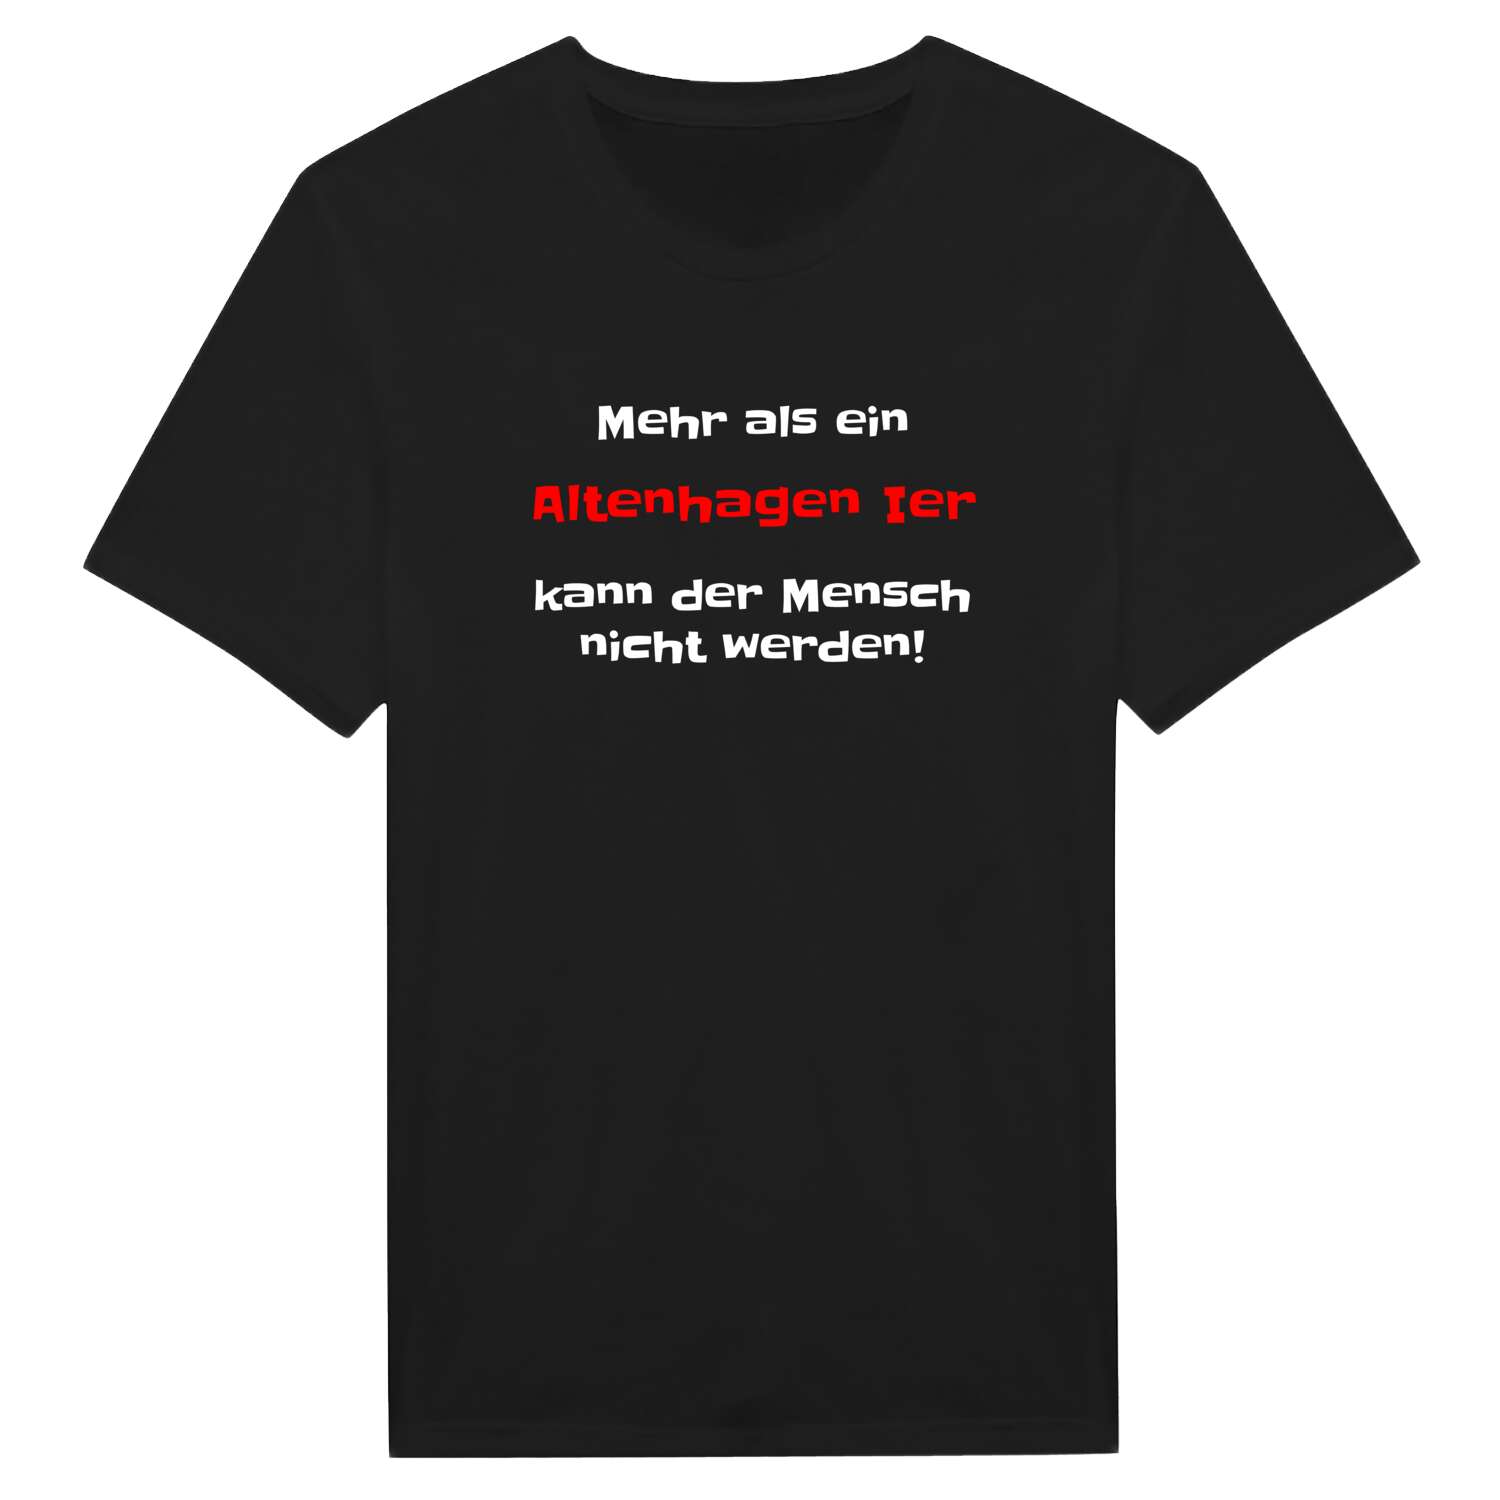 Altenhagen I T-Shirt »Mehr als ein«